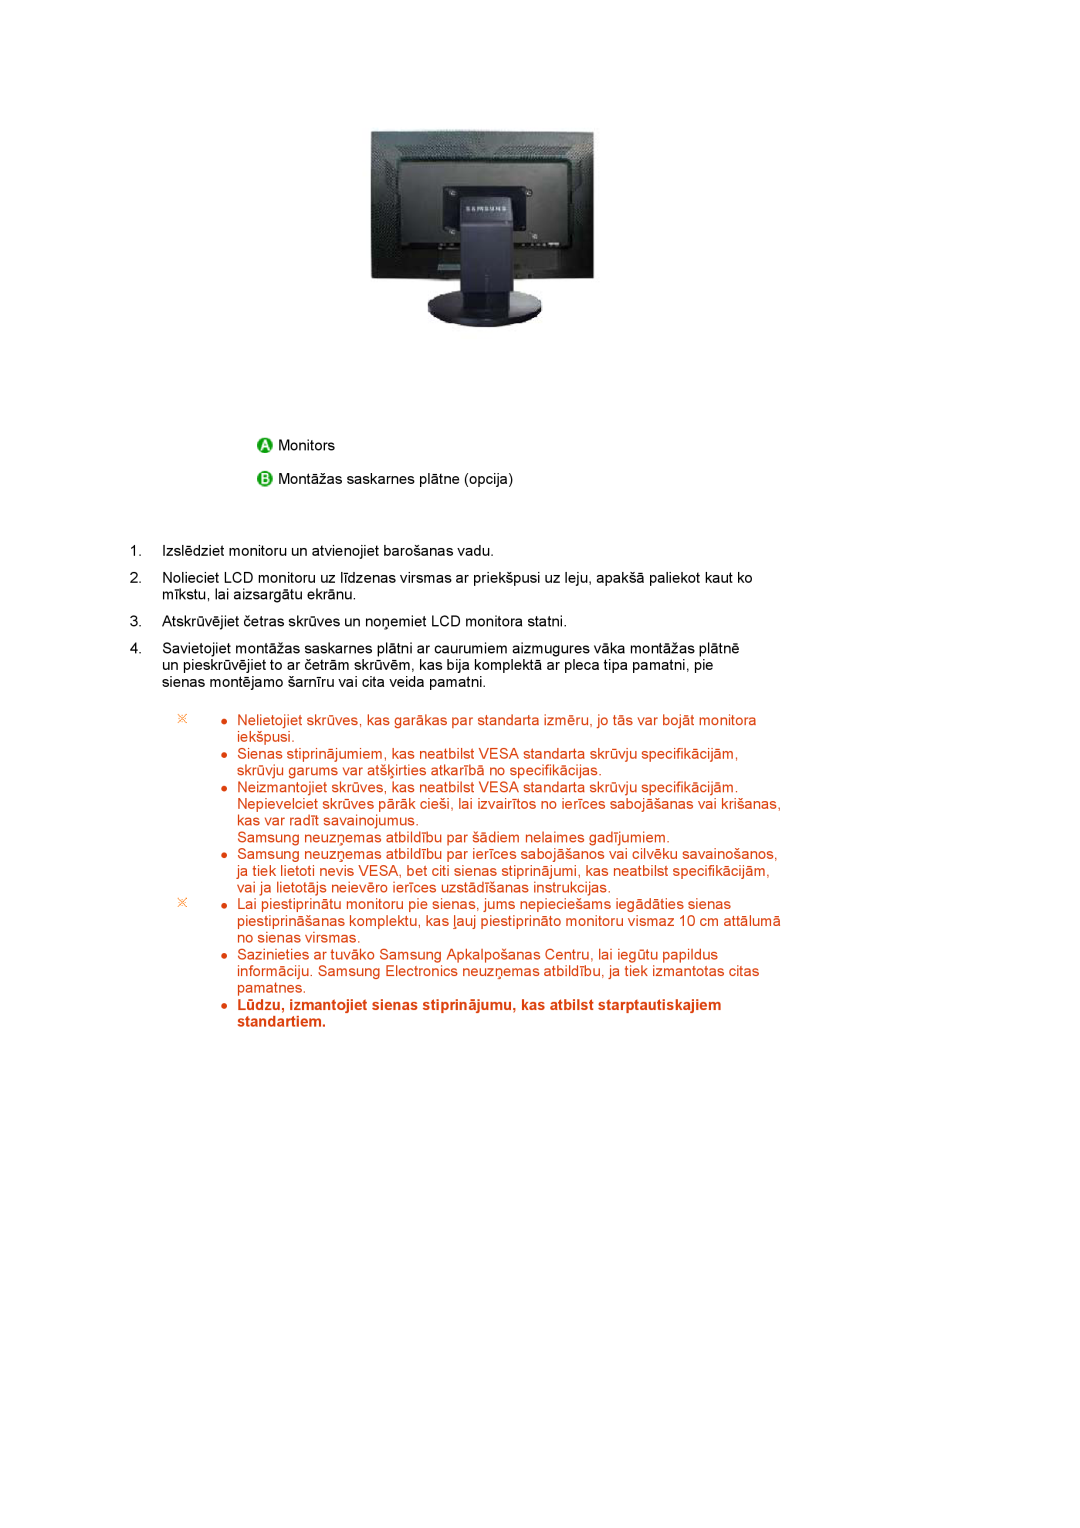 Samsung LS24HUCEBQ/EDC manual Monitors Montāžas saskarnes plātne opcija 